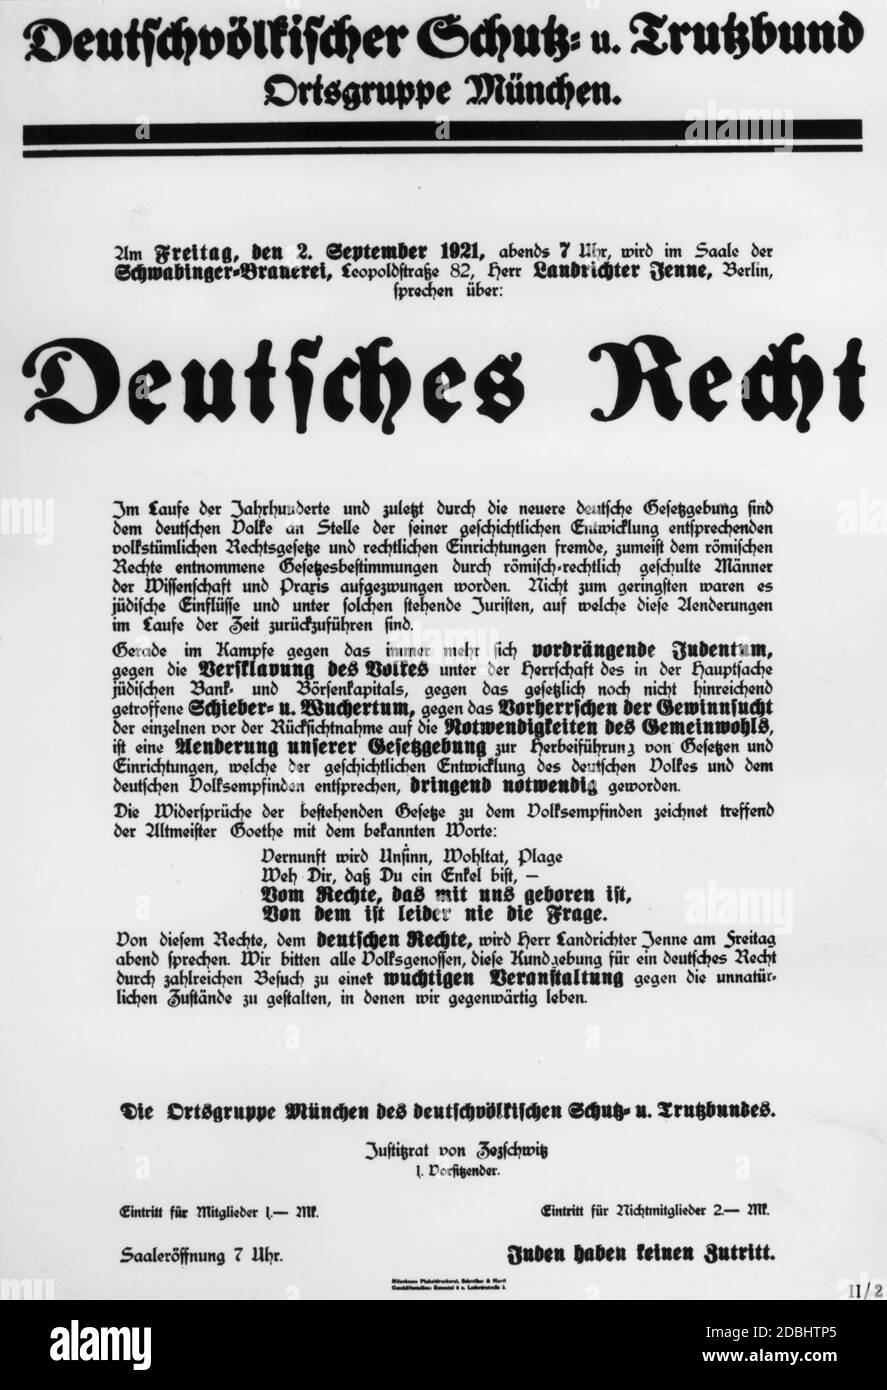 'El Deutschvoelkischer Schutz- und Trutzbund (en inglés: Federación Alemana de Protección Nacionalista y Defiance), fundada en 1920, propagó las ideas de voelkisch. Después del asesinato de Rathenau, fue prohibido como una amenaza para el estado. Este cartel de propaganda afirma que la ley romana fue forzada sobre el pueblo alemán y que fue elaborada por judíos. Debido a los judíos internacionales cada vez más "avanzando" y a la esclavitud del pueblo alemán por parte de la banca judía y el capital de la bolsa, esta federación ve la necesidad de desarrollar una legislación alemana con leyes e instituciones alemanas. Foto de stock